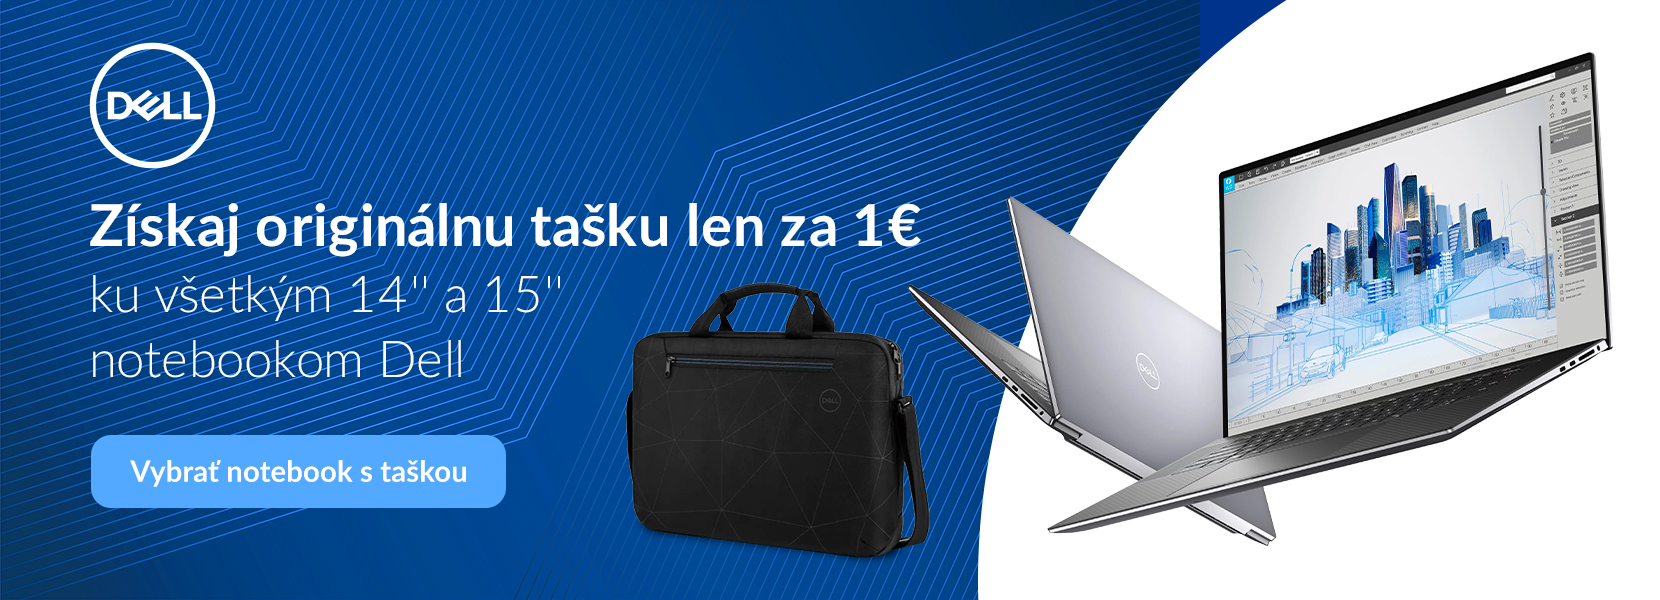 Dell: Získaj originálnu tašku len za 1€